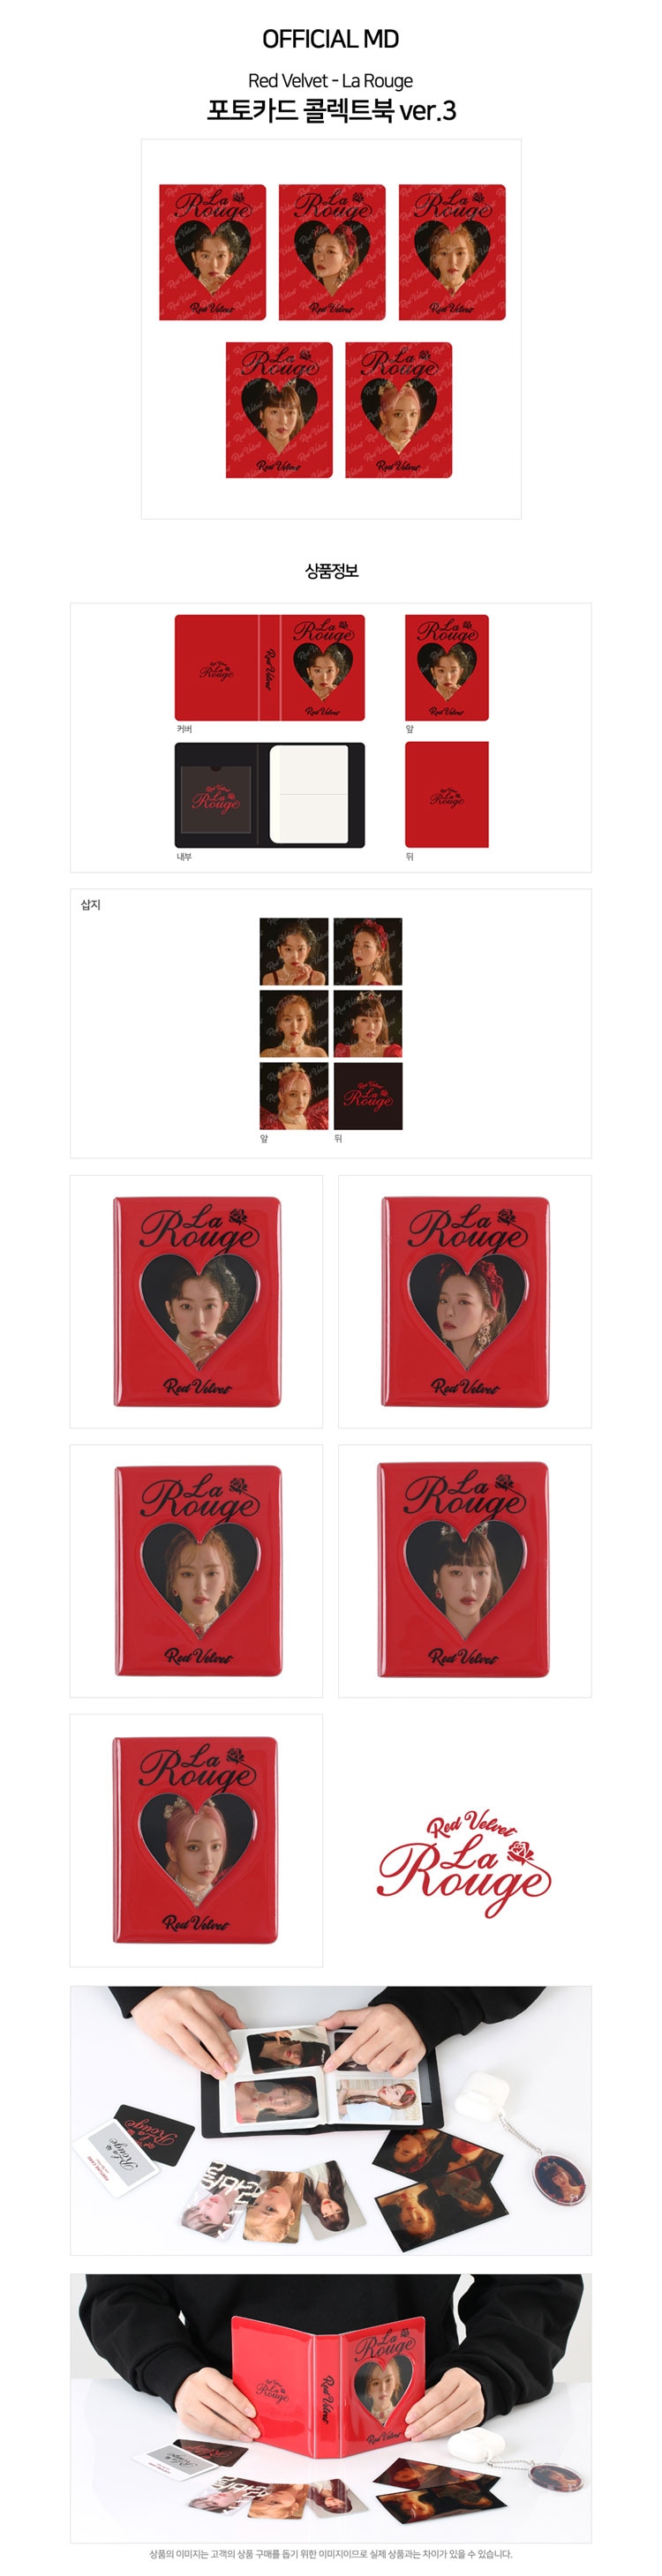 【予約】RED VELVET PHOTOCARD COLLECT BOOK VER3「Red Velvet - La Rouge  GOODS」-k-funshop